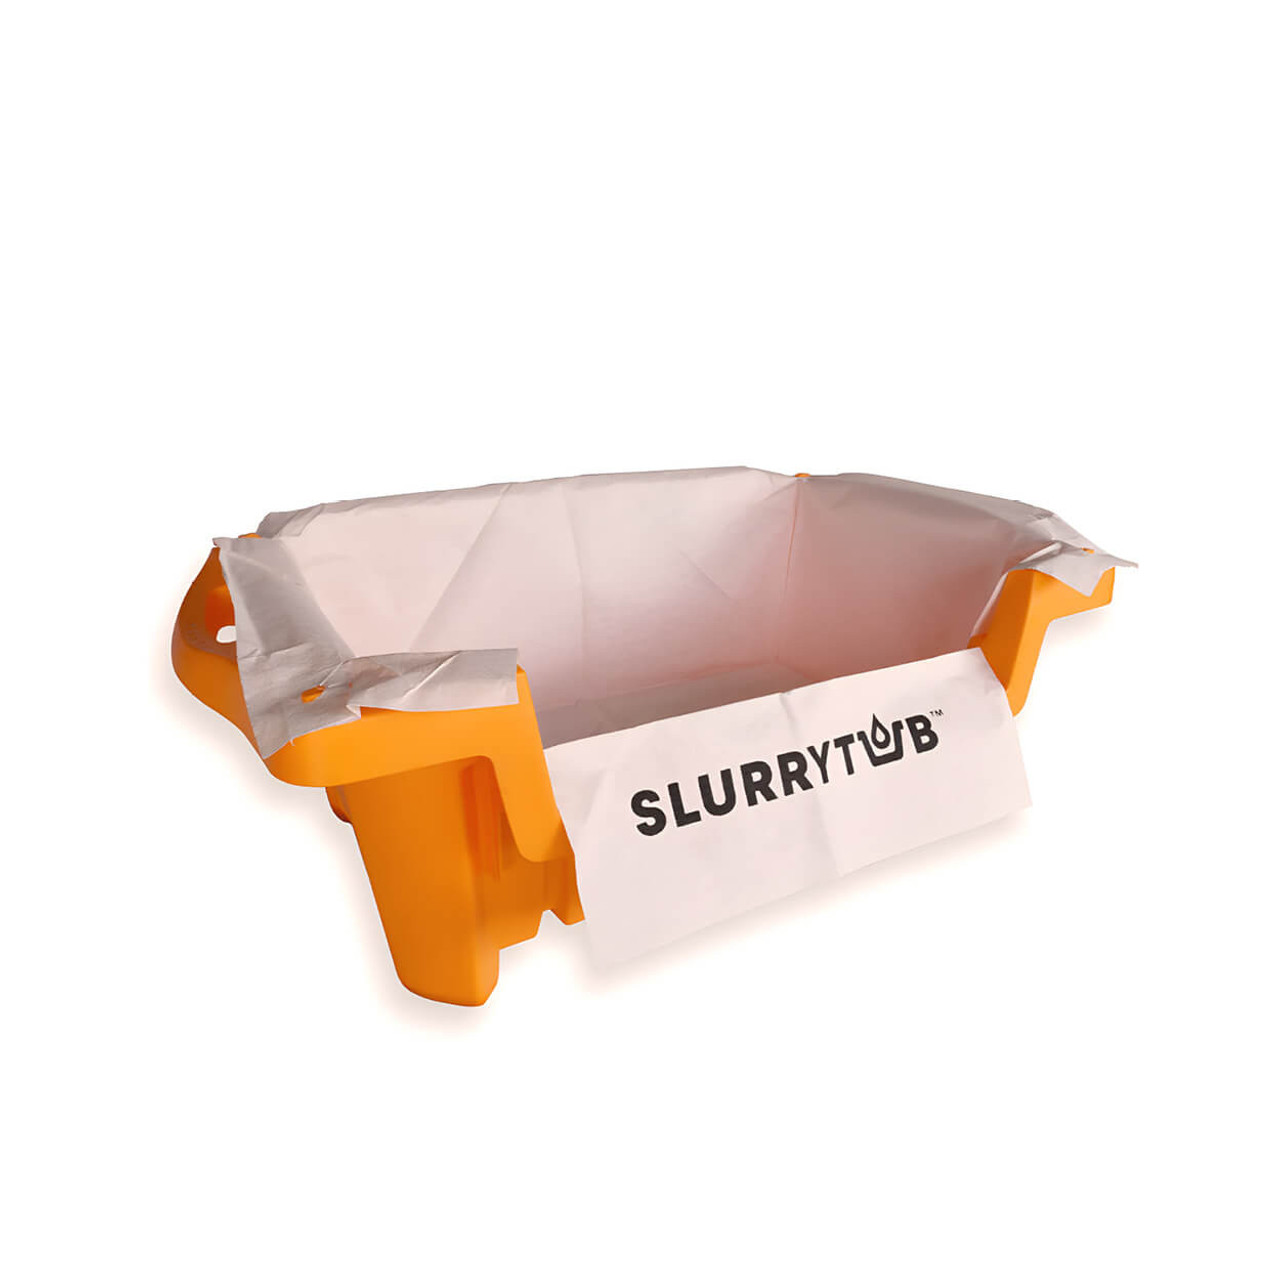  Slurrytub Single Tub 